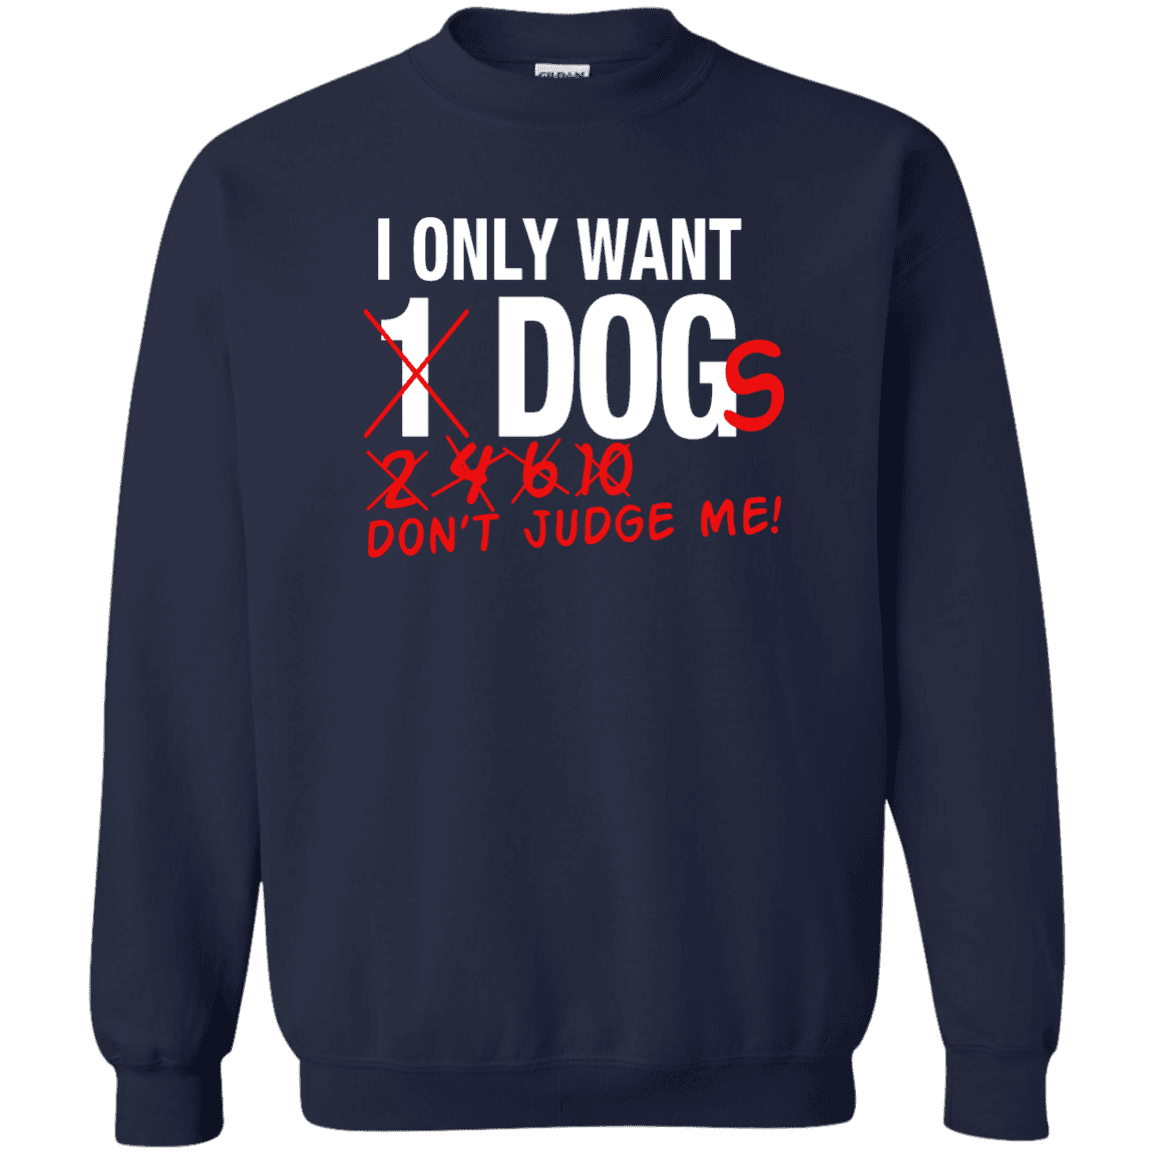 I Only Want 1 Dog - Sweatshirt.